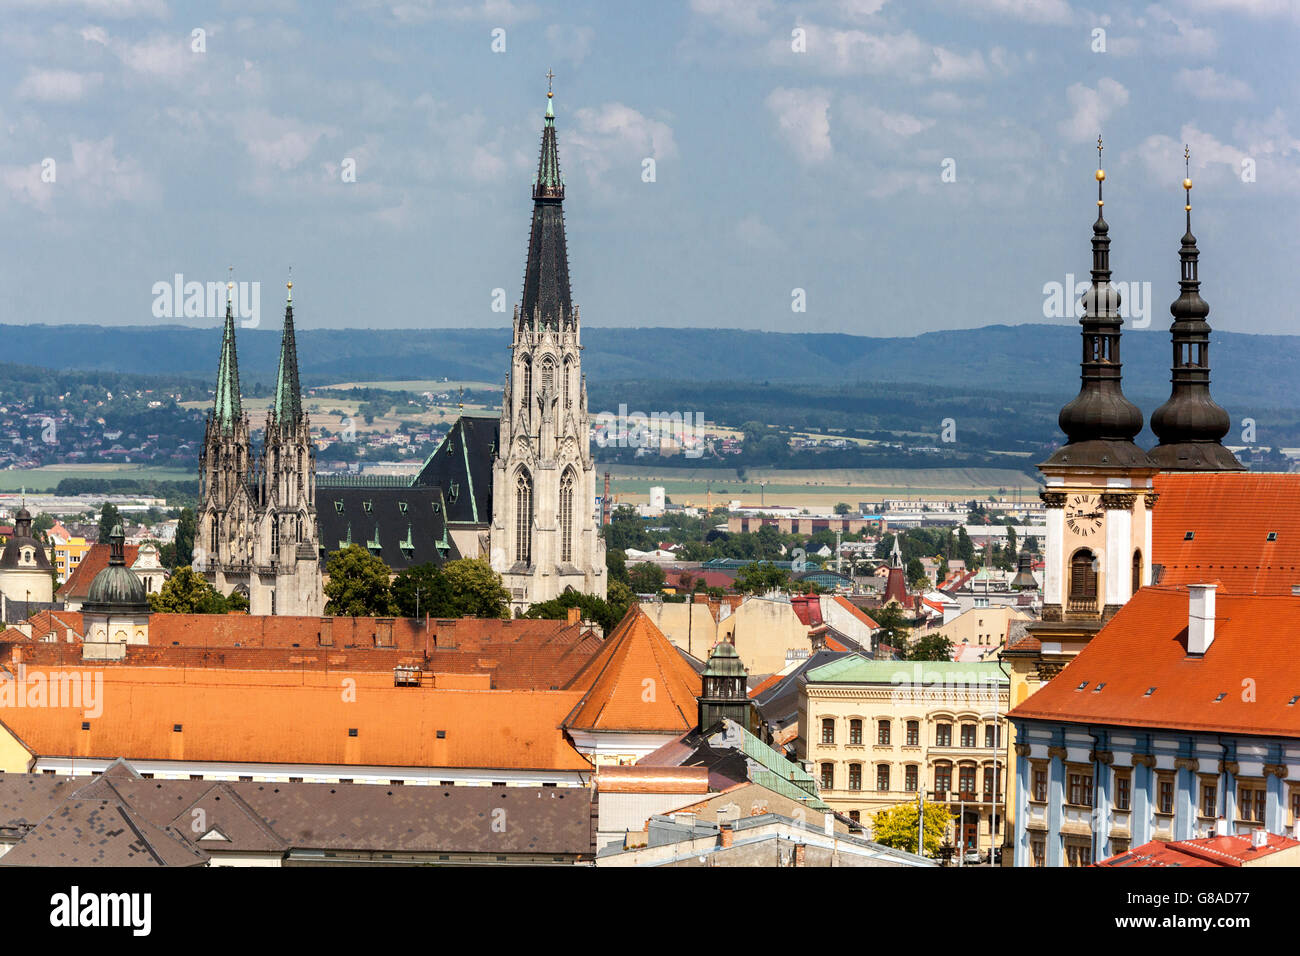 Olomouc vue aérienne de la Cathédrale de équipés Venceslas, Olomouc Moravie, République tchèque, Europe Banque D'Images